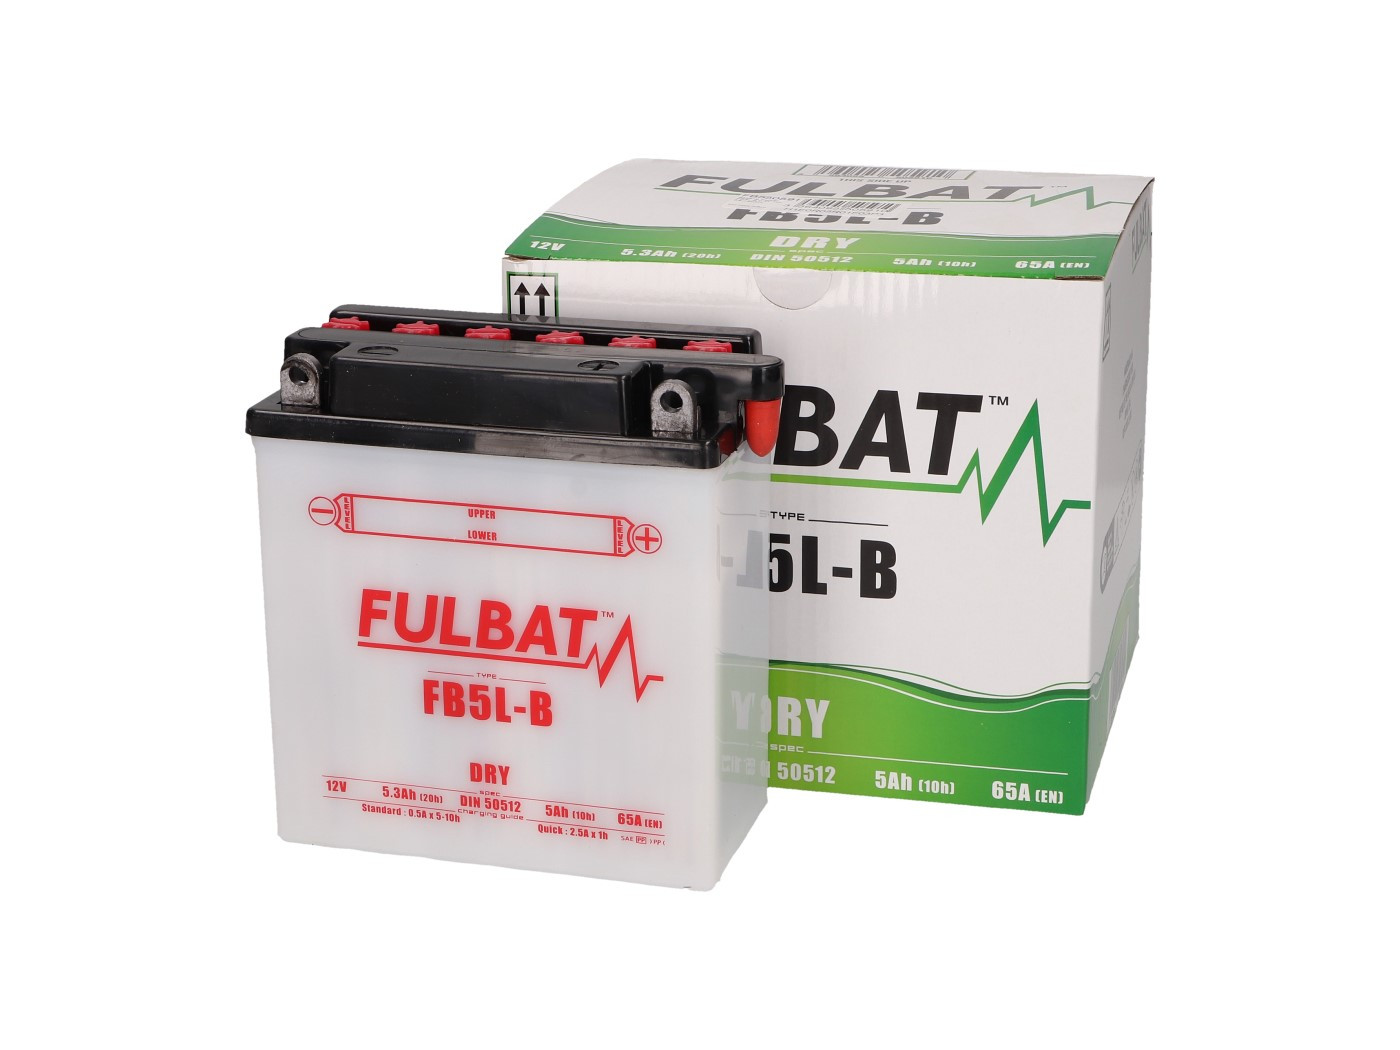 Fulbat FB5L-B DRY száraz akkumulátor + savcsomag